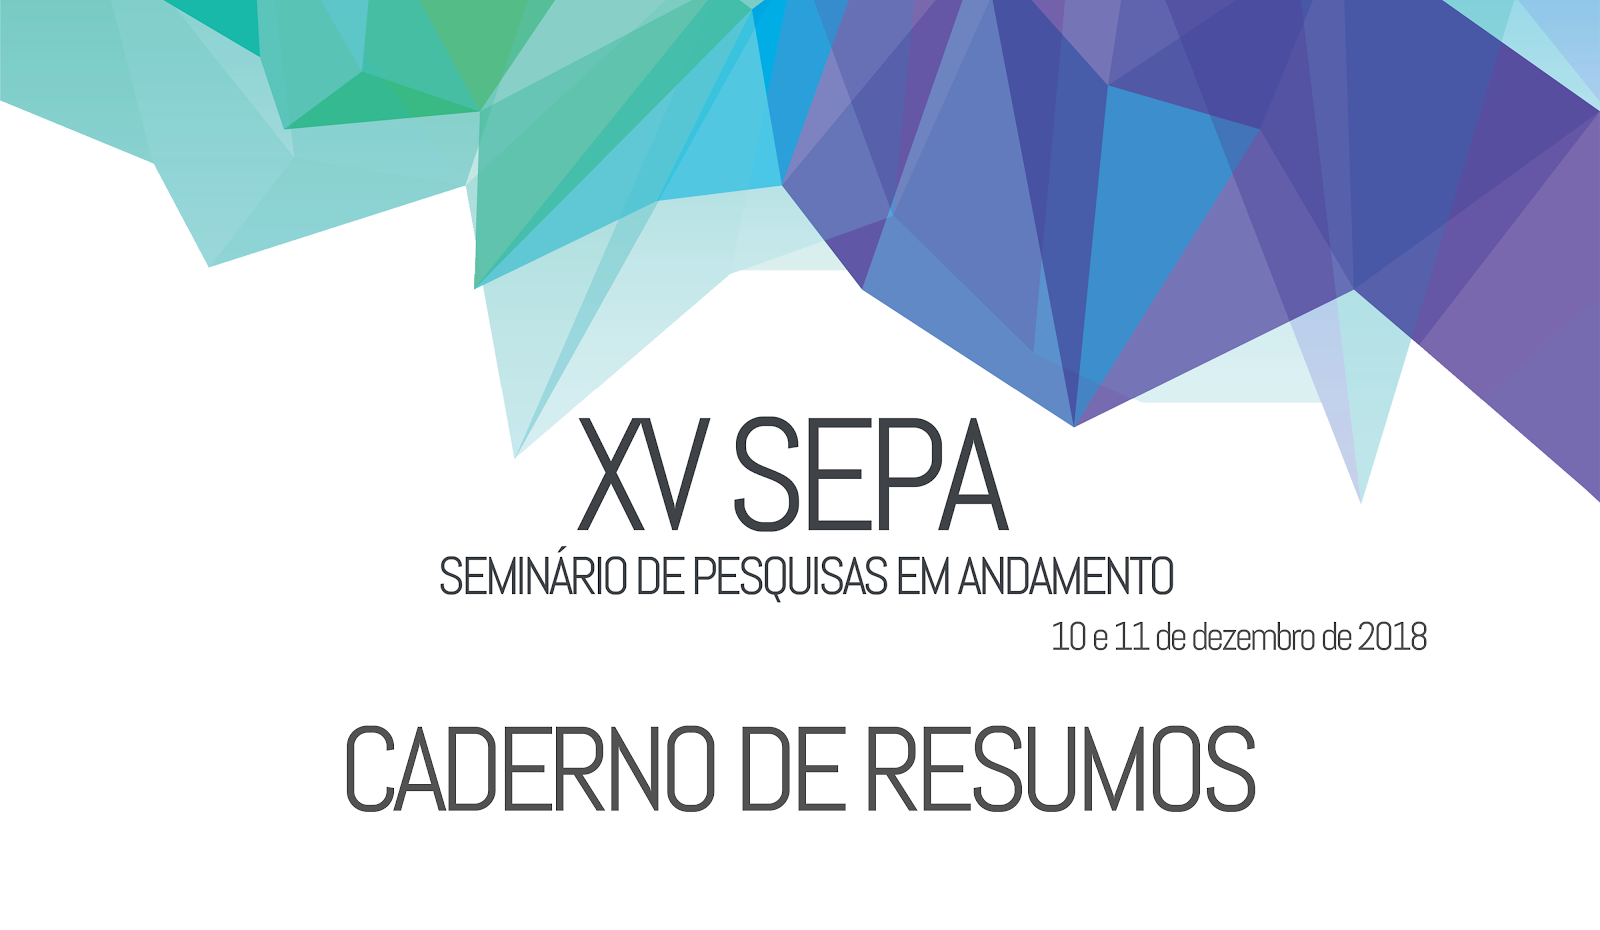 Caderno de resumos - XV SEPA